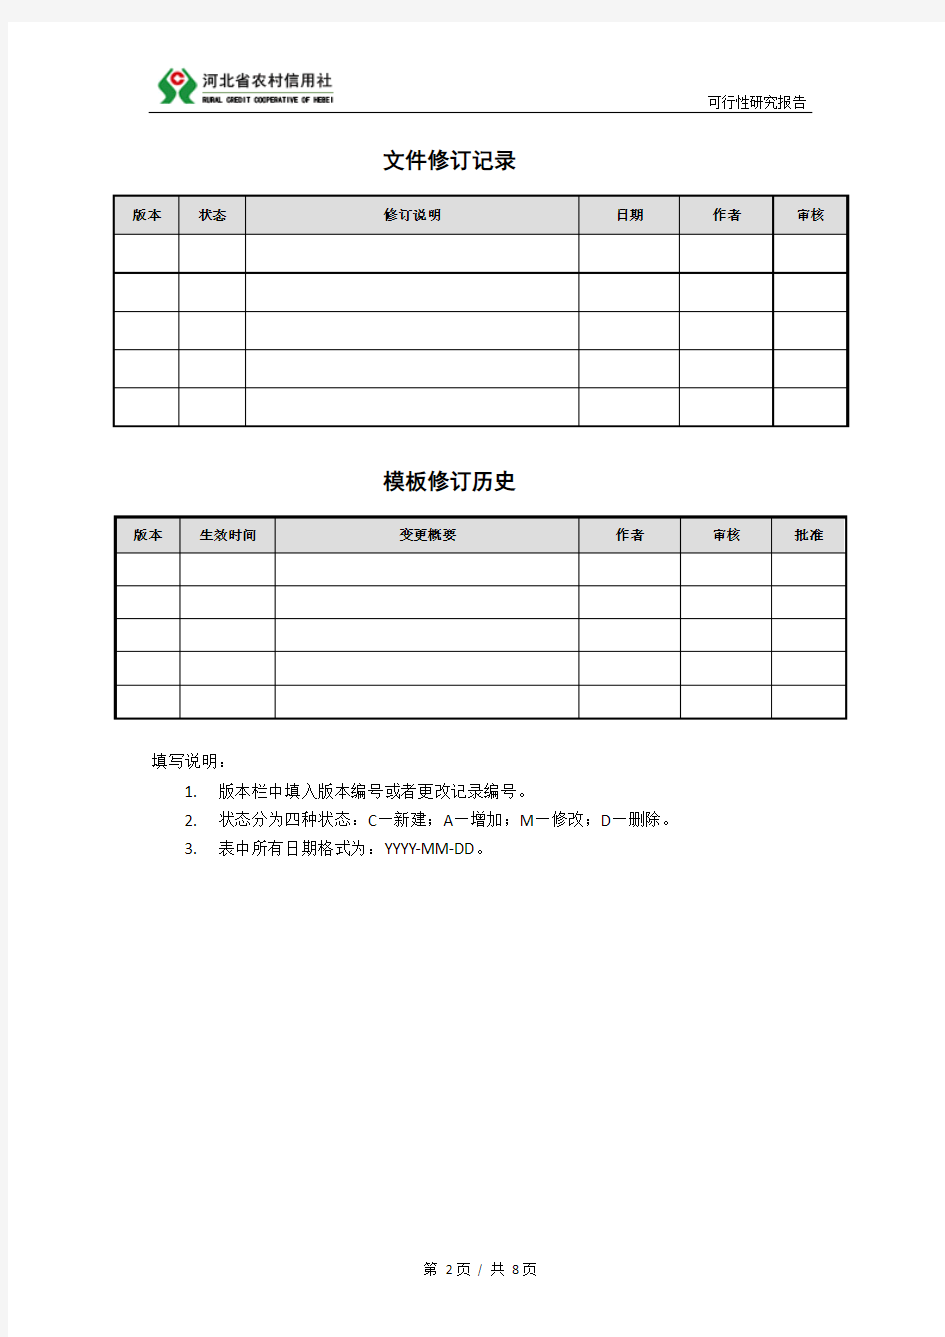 1.河北省农村信用社信息化建设项目可行性研究报告